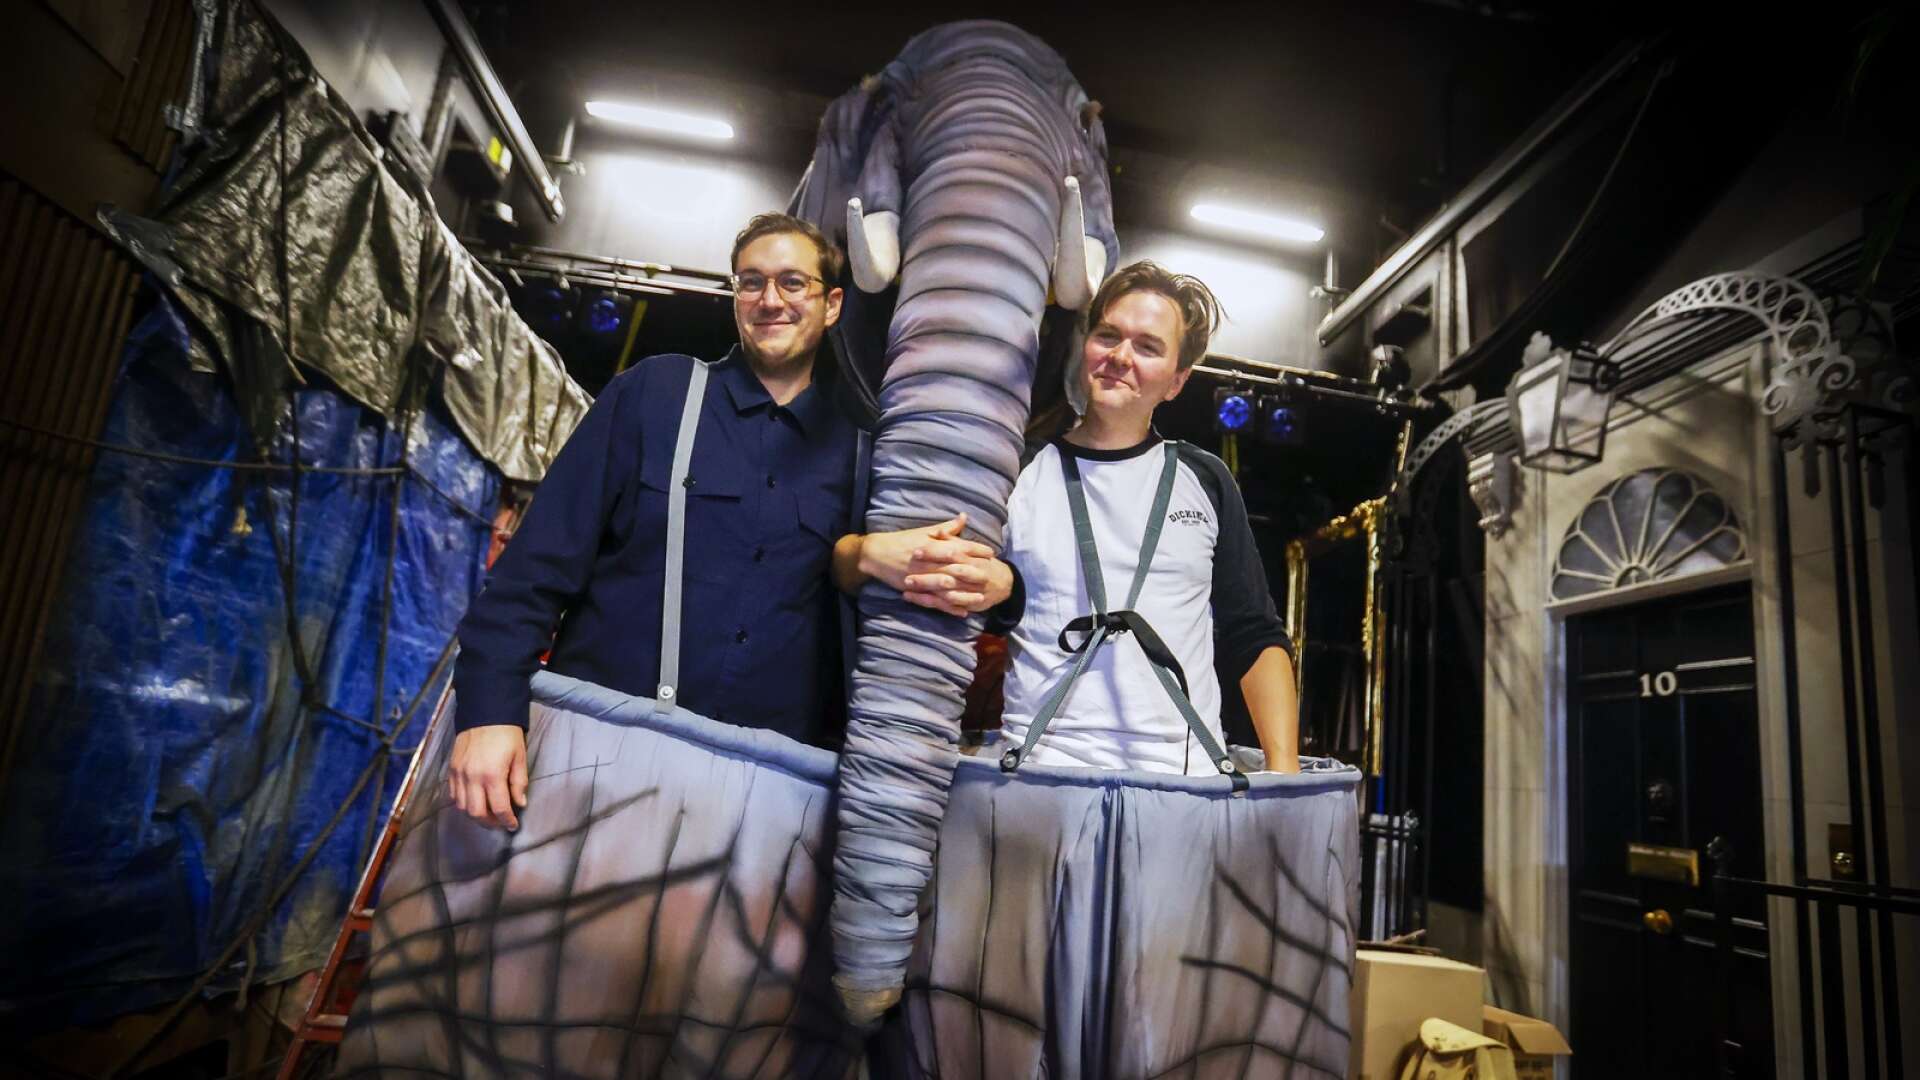 Elefanten Sonja har en viktig roll i Hundraåringen som klev ut genom fönstret och försvann, som spelas på Wermland opera. Den sinnrika elefanten bärs upp av Hani Arrabi (fram) och Valdemar Möller (bak).